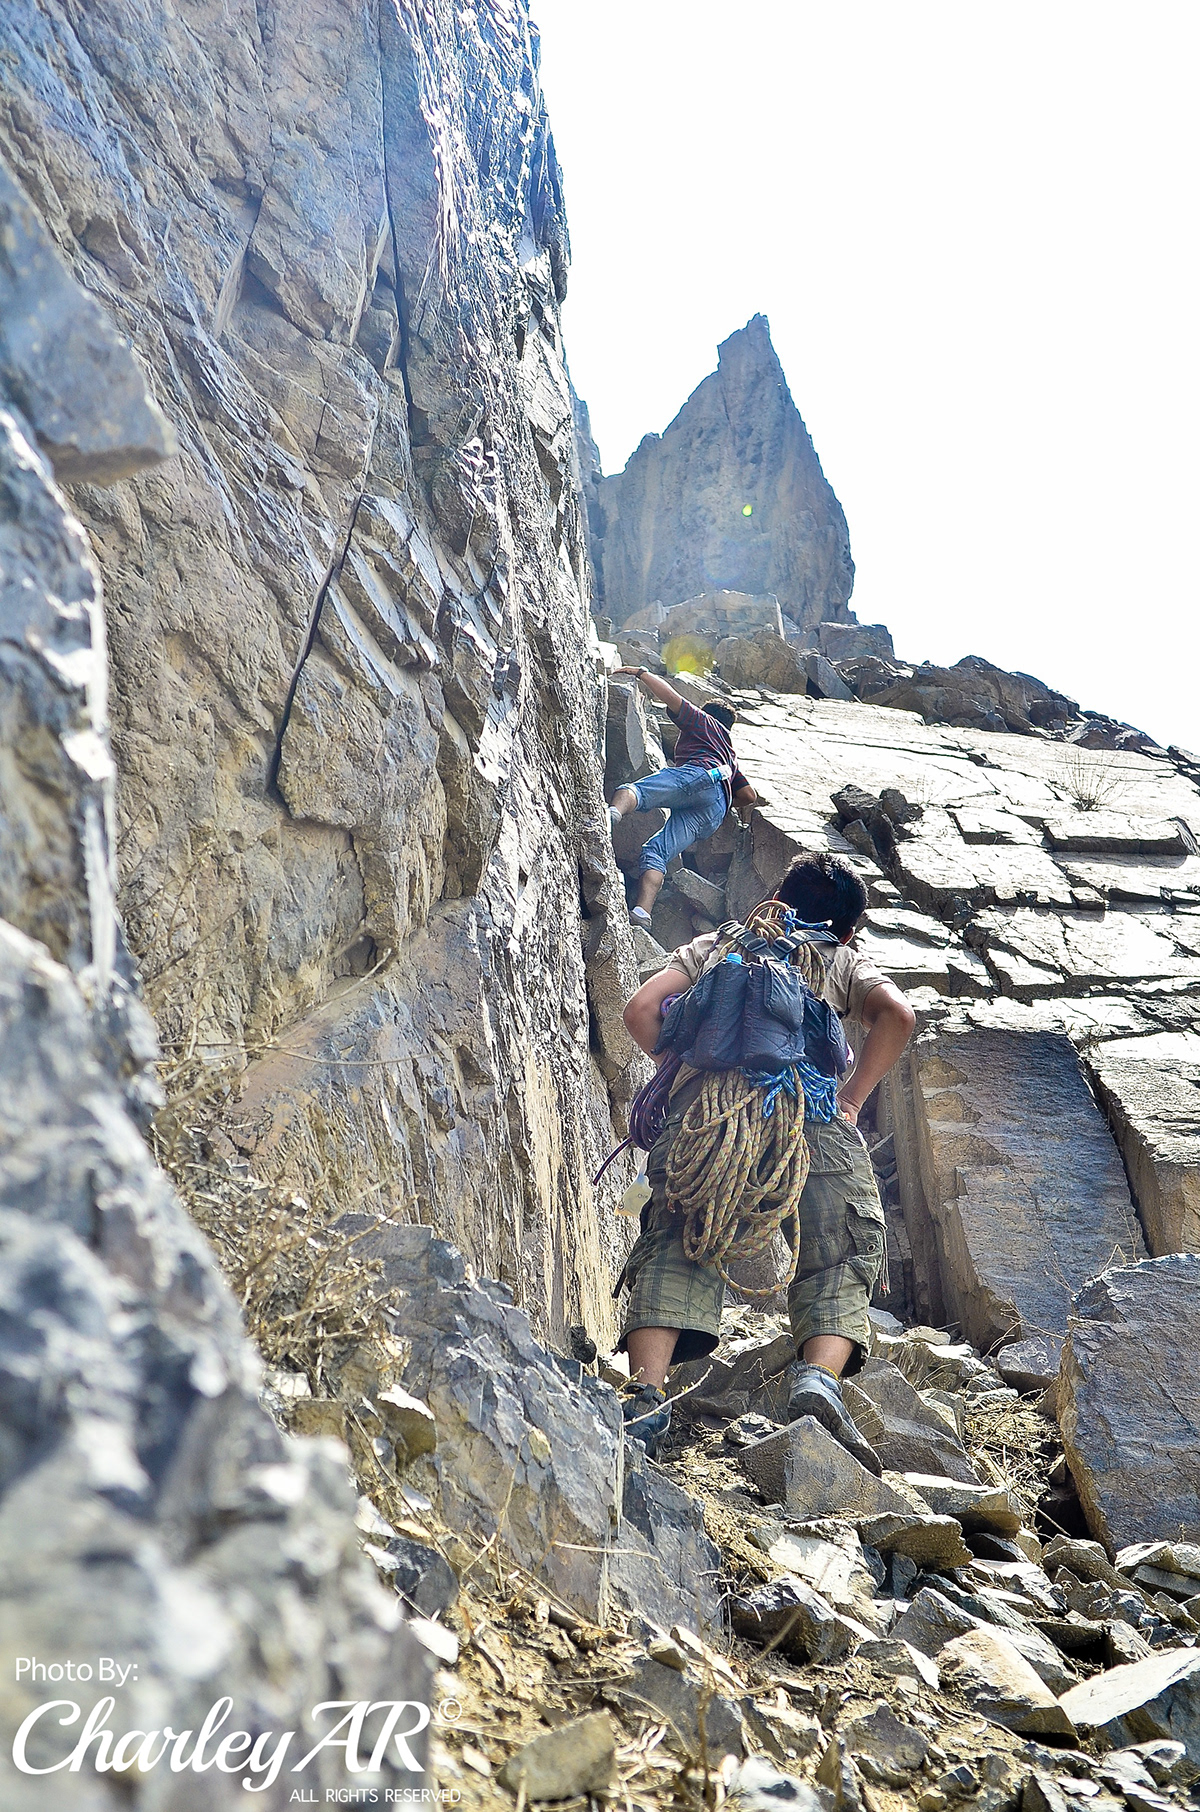 escalada en roca la libertad peru